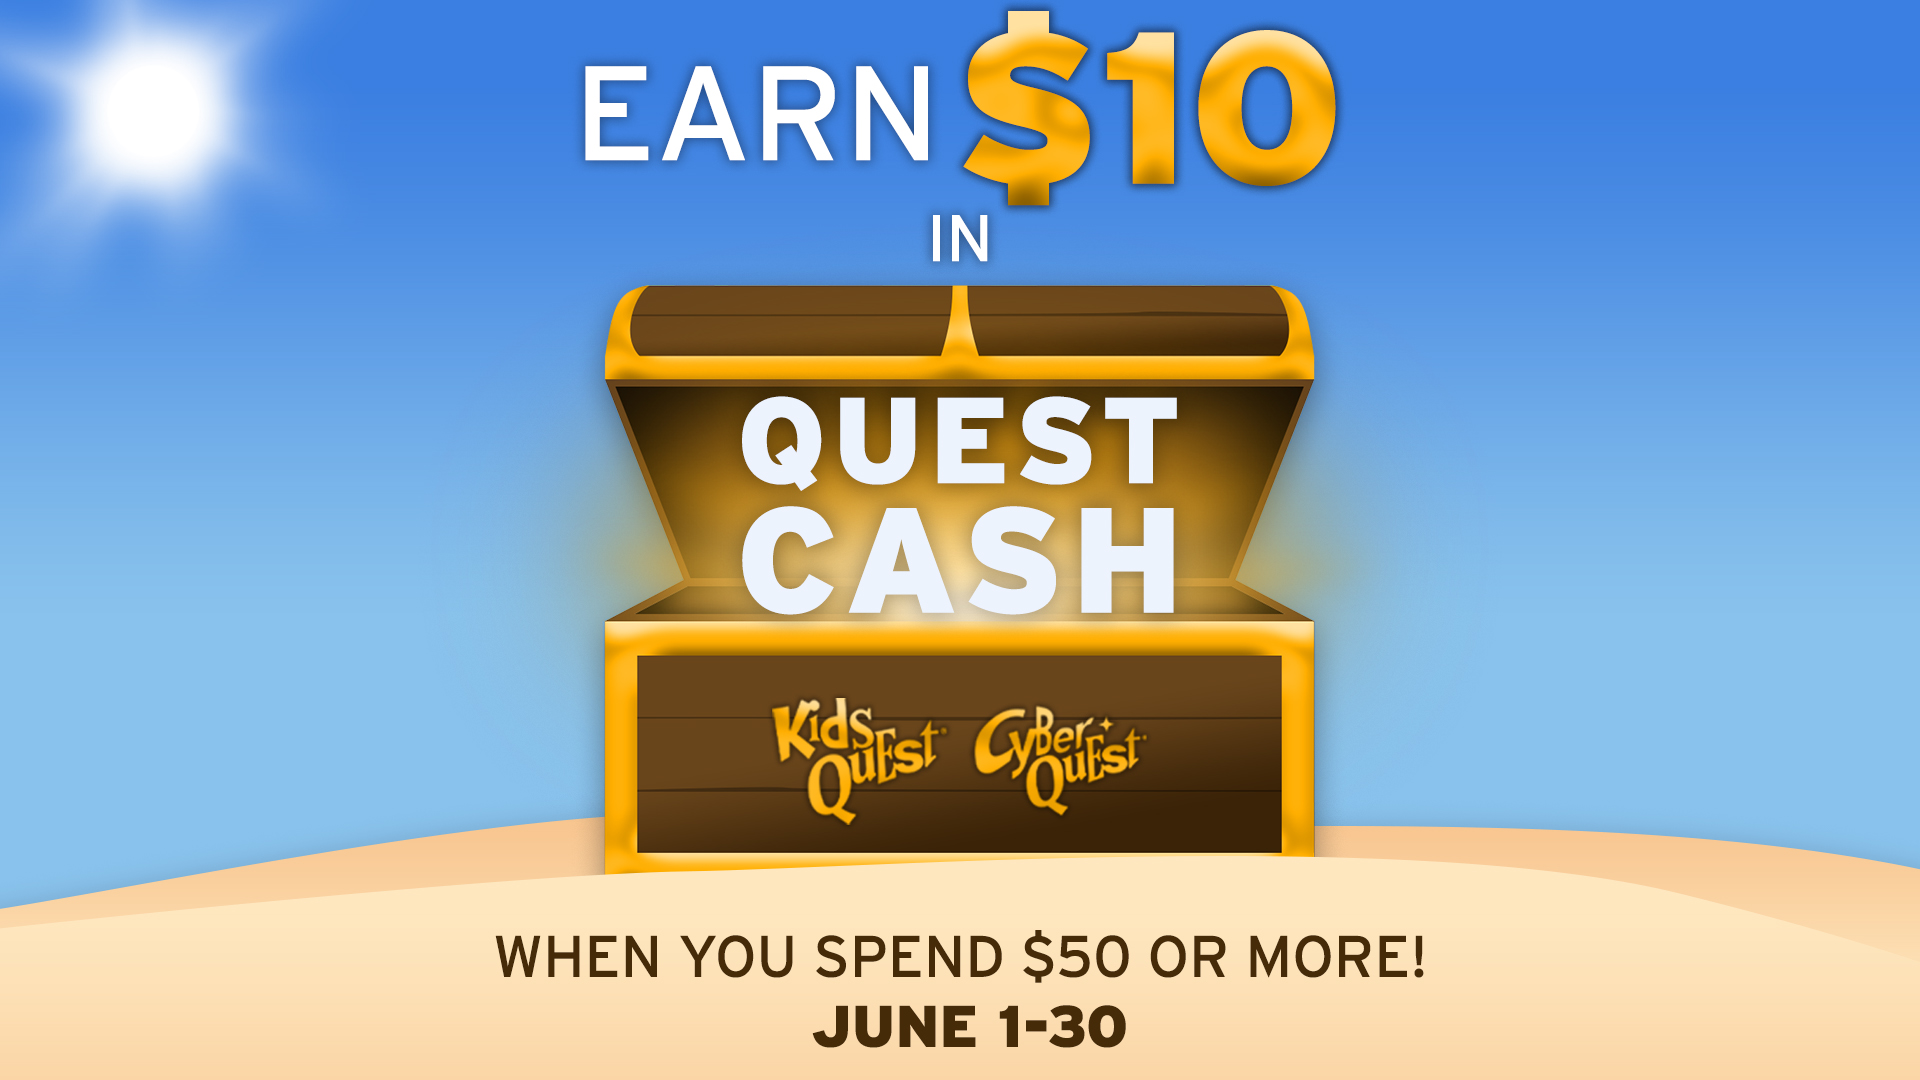 Earn $10 in Quest Cash June 1 - 30